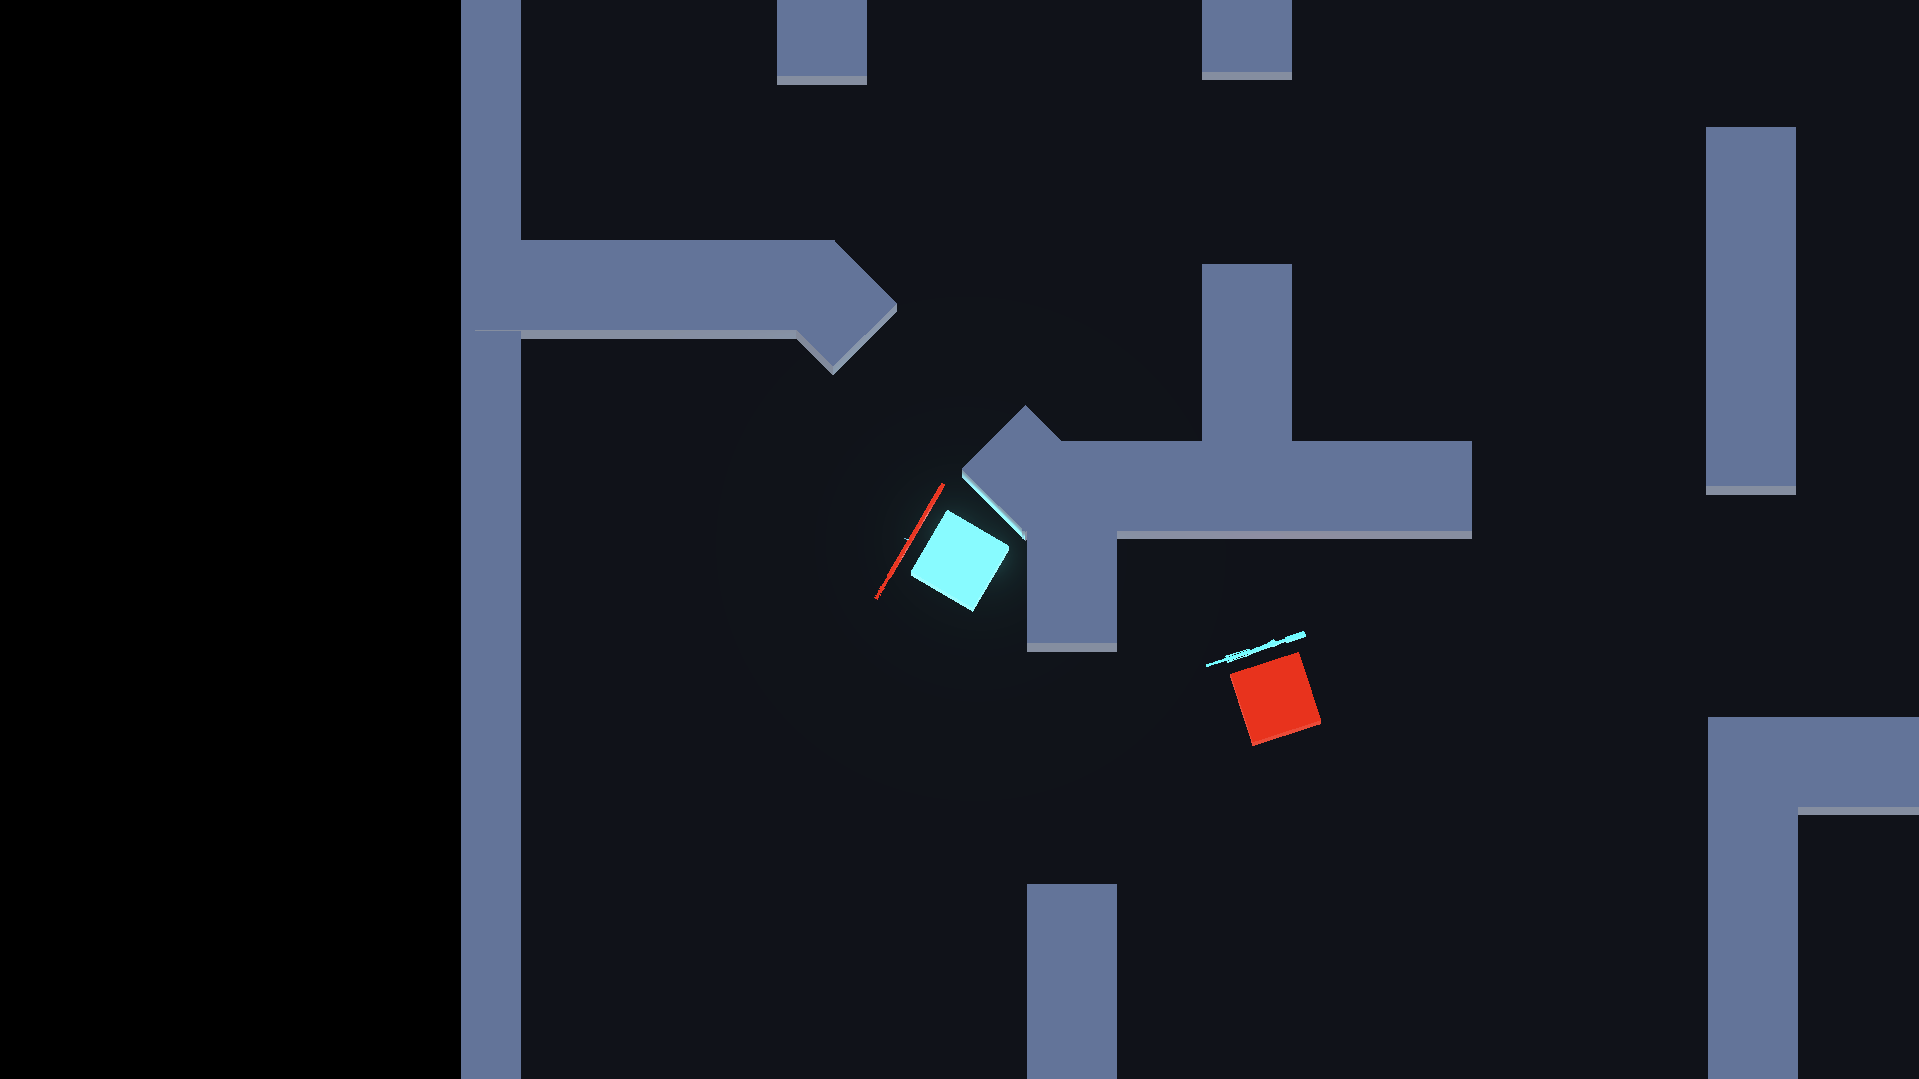 Здесь, конечно, не видно, но игрок и враг (синий и красный соответственно) двигаются и умеют стрелять